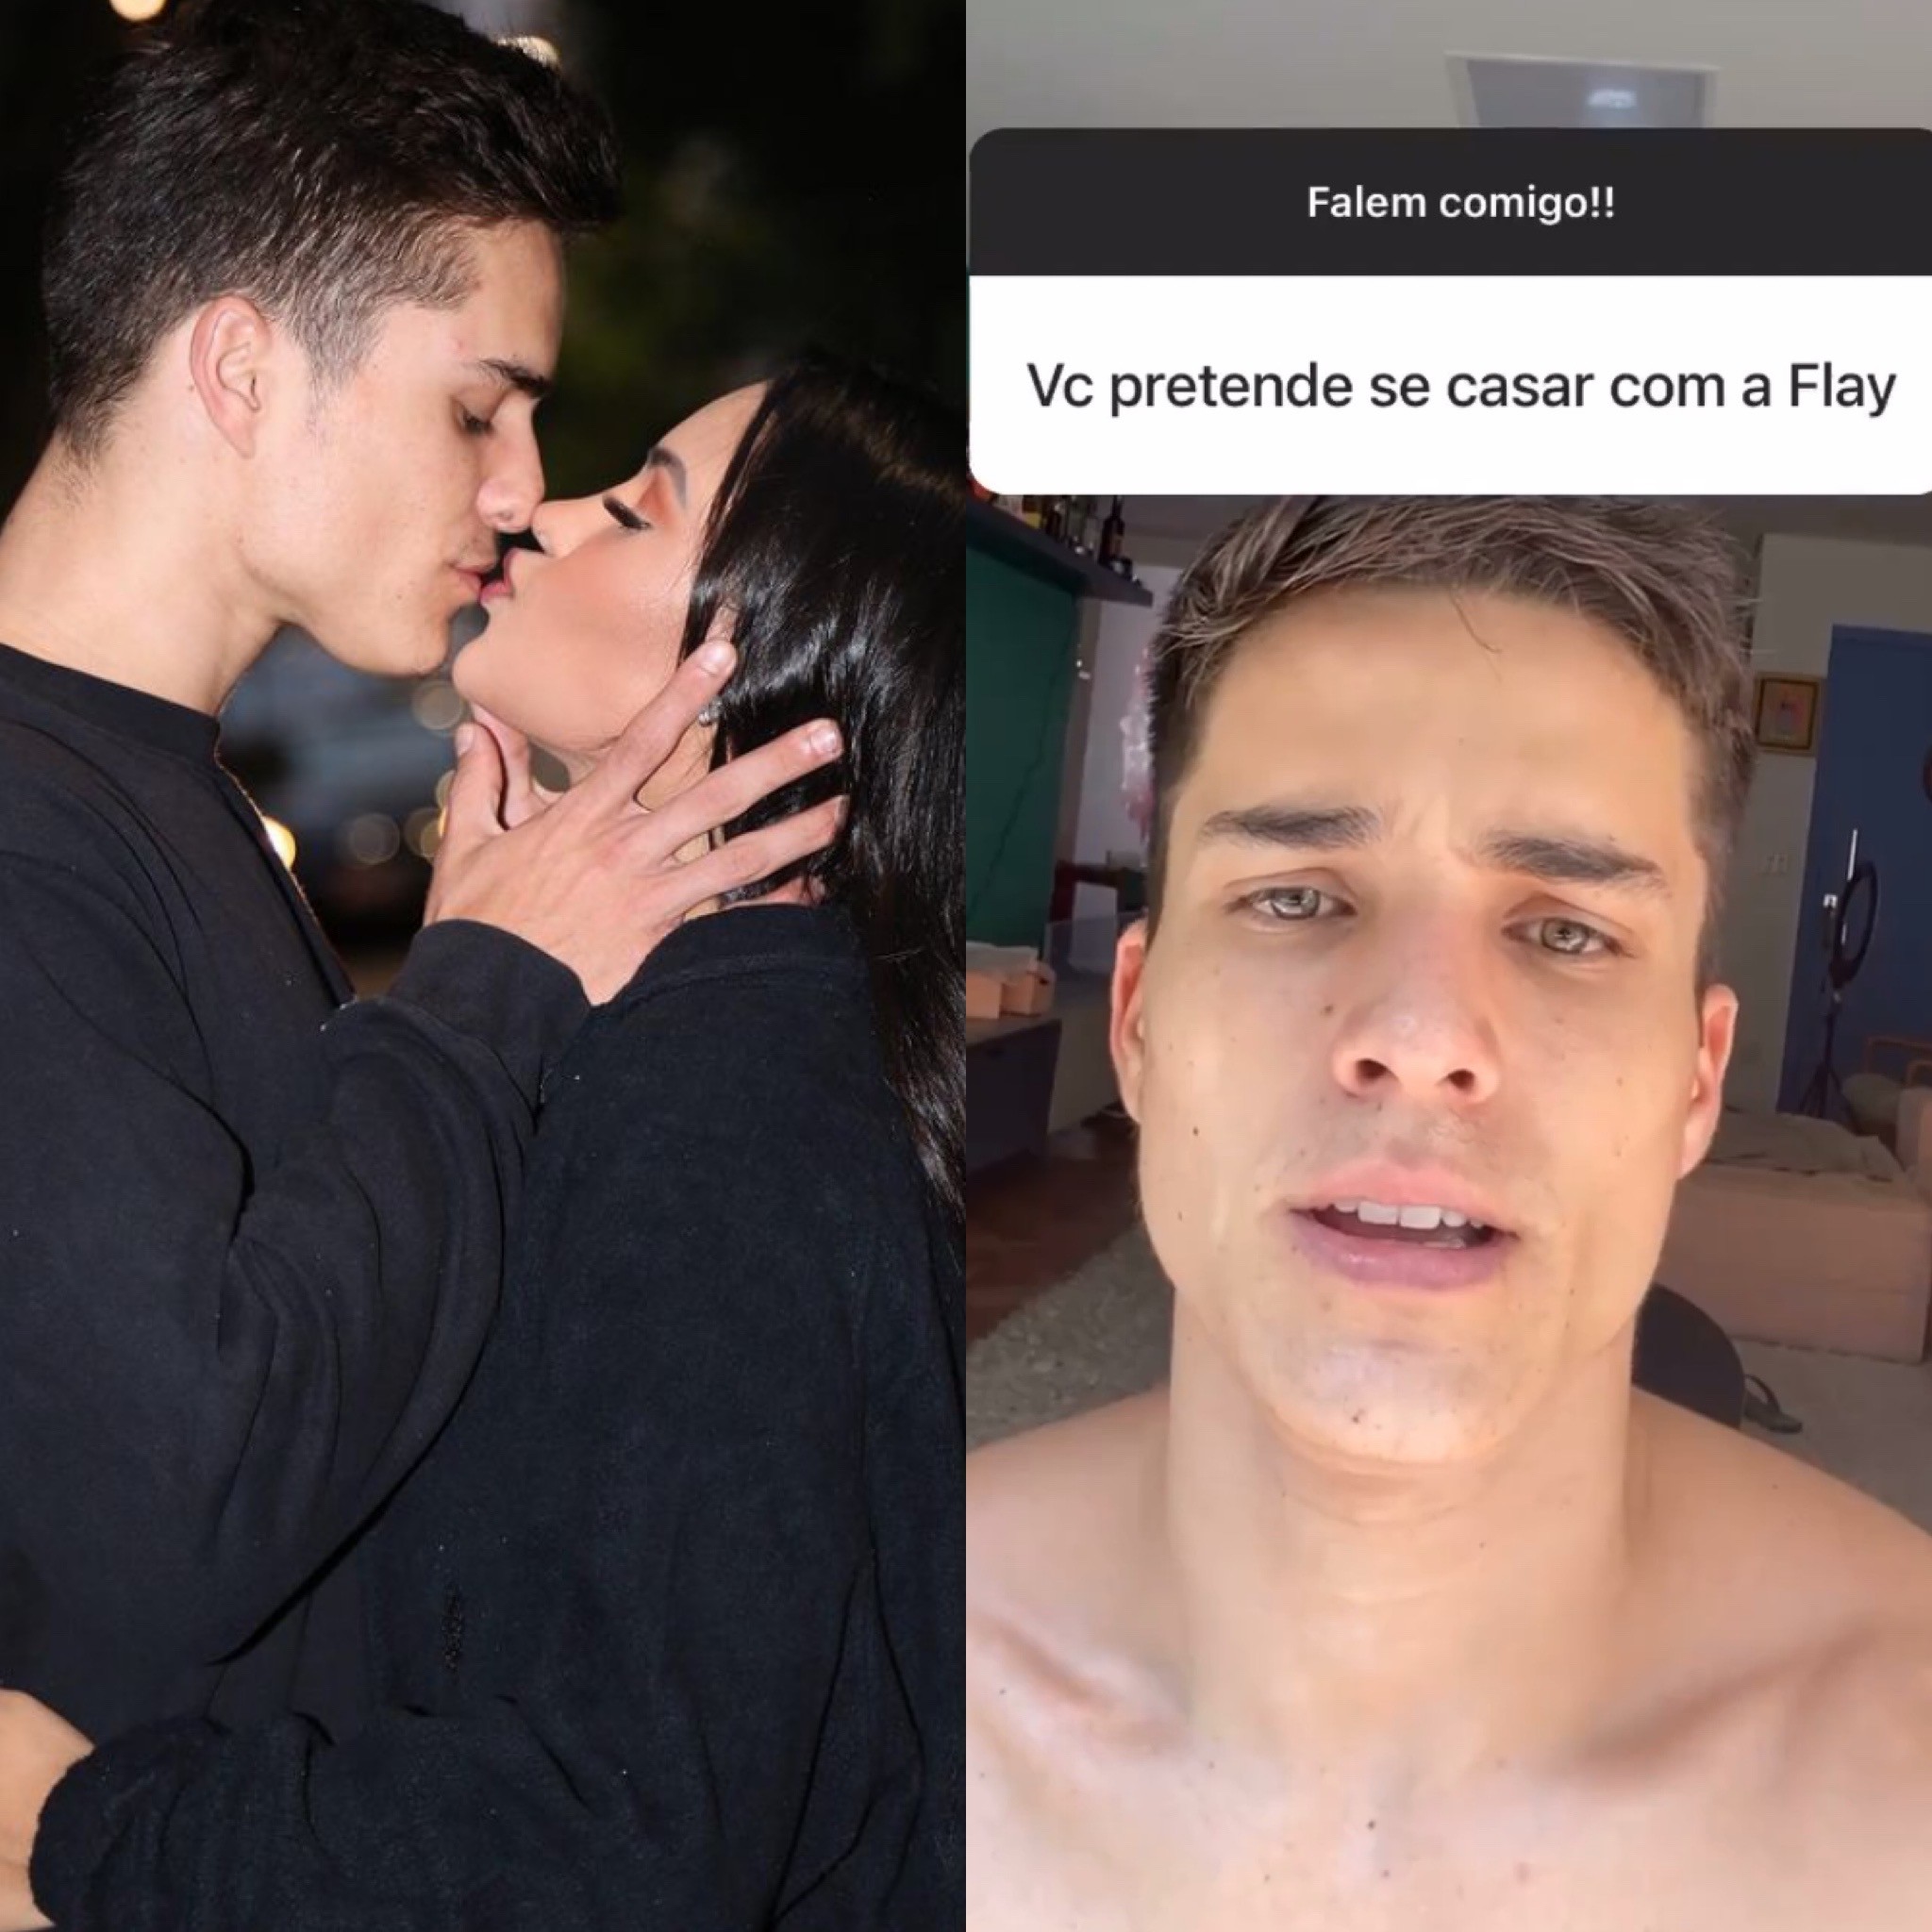 Pedro Maia diz que pretende se casar com Flay: 